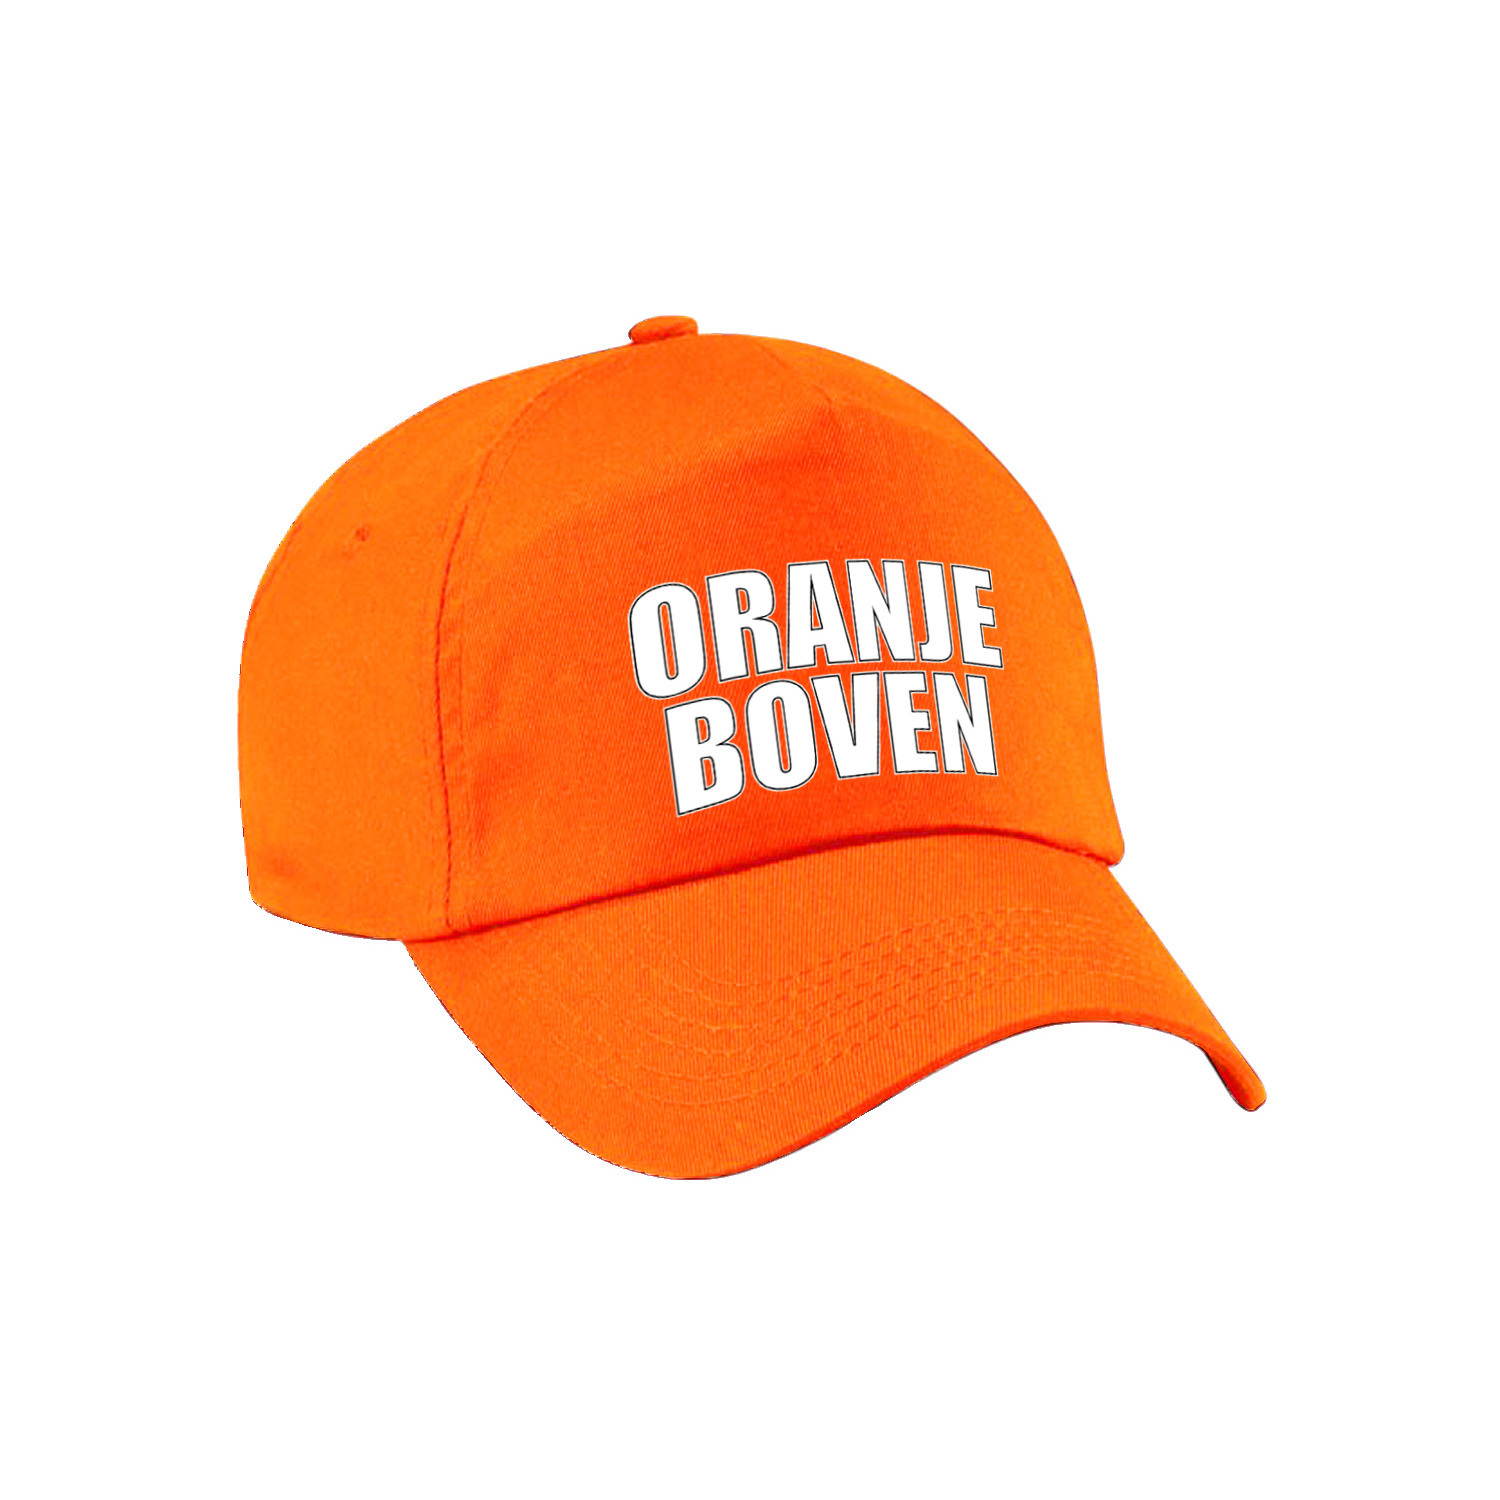 Oranje boven supporter pet cap Holland Nederland fan EK WK voor volwassenen